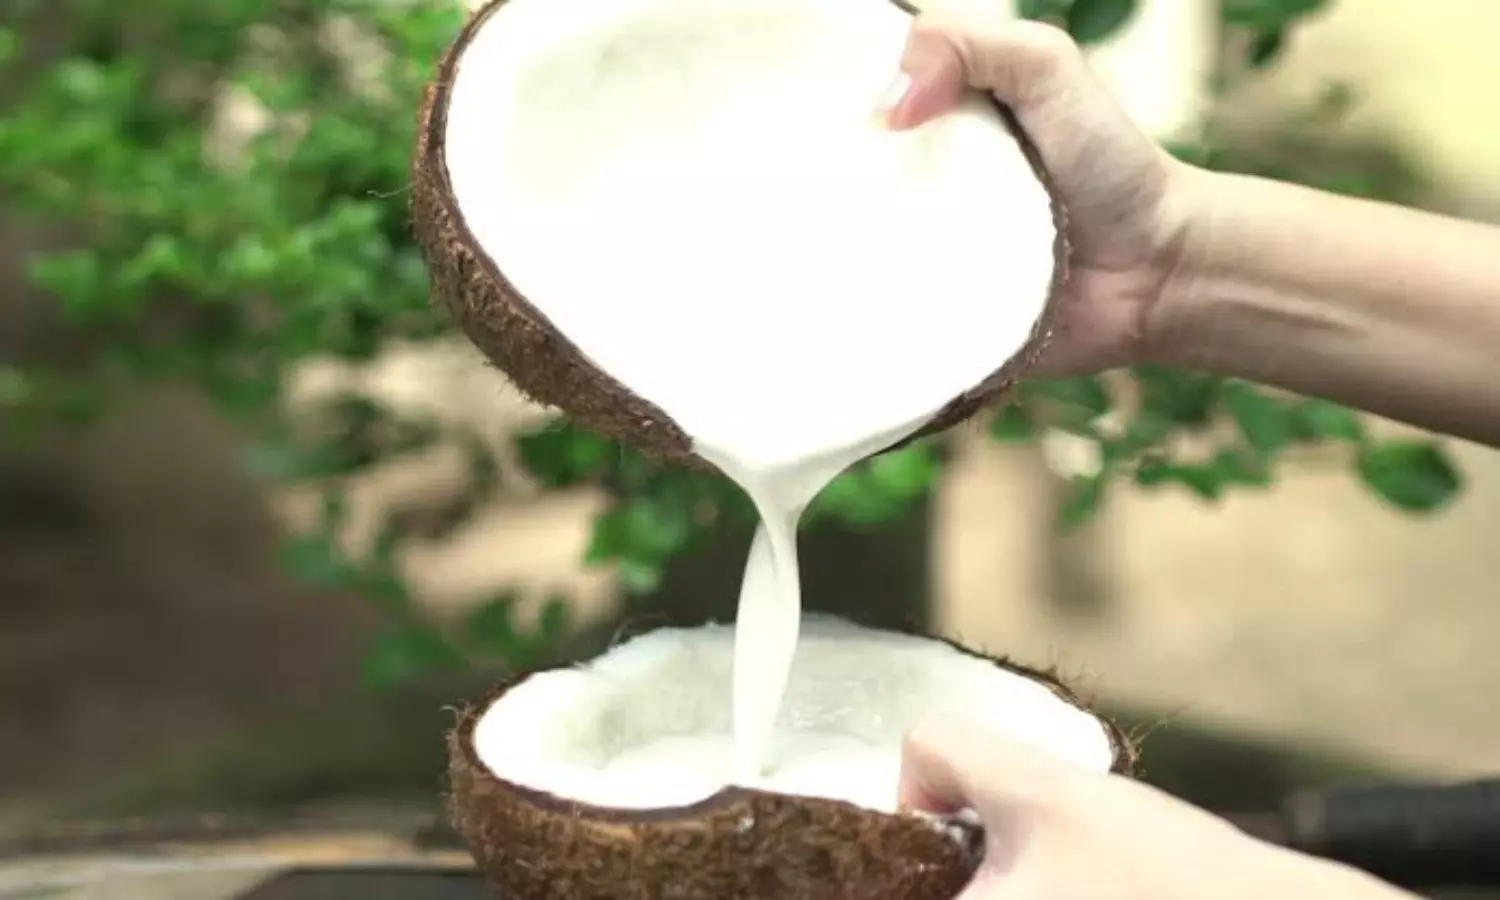 Benefits of Coconut Milk